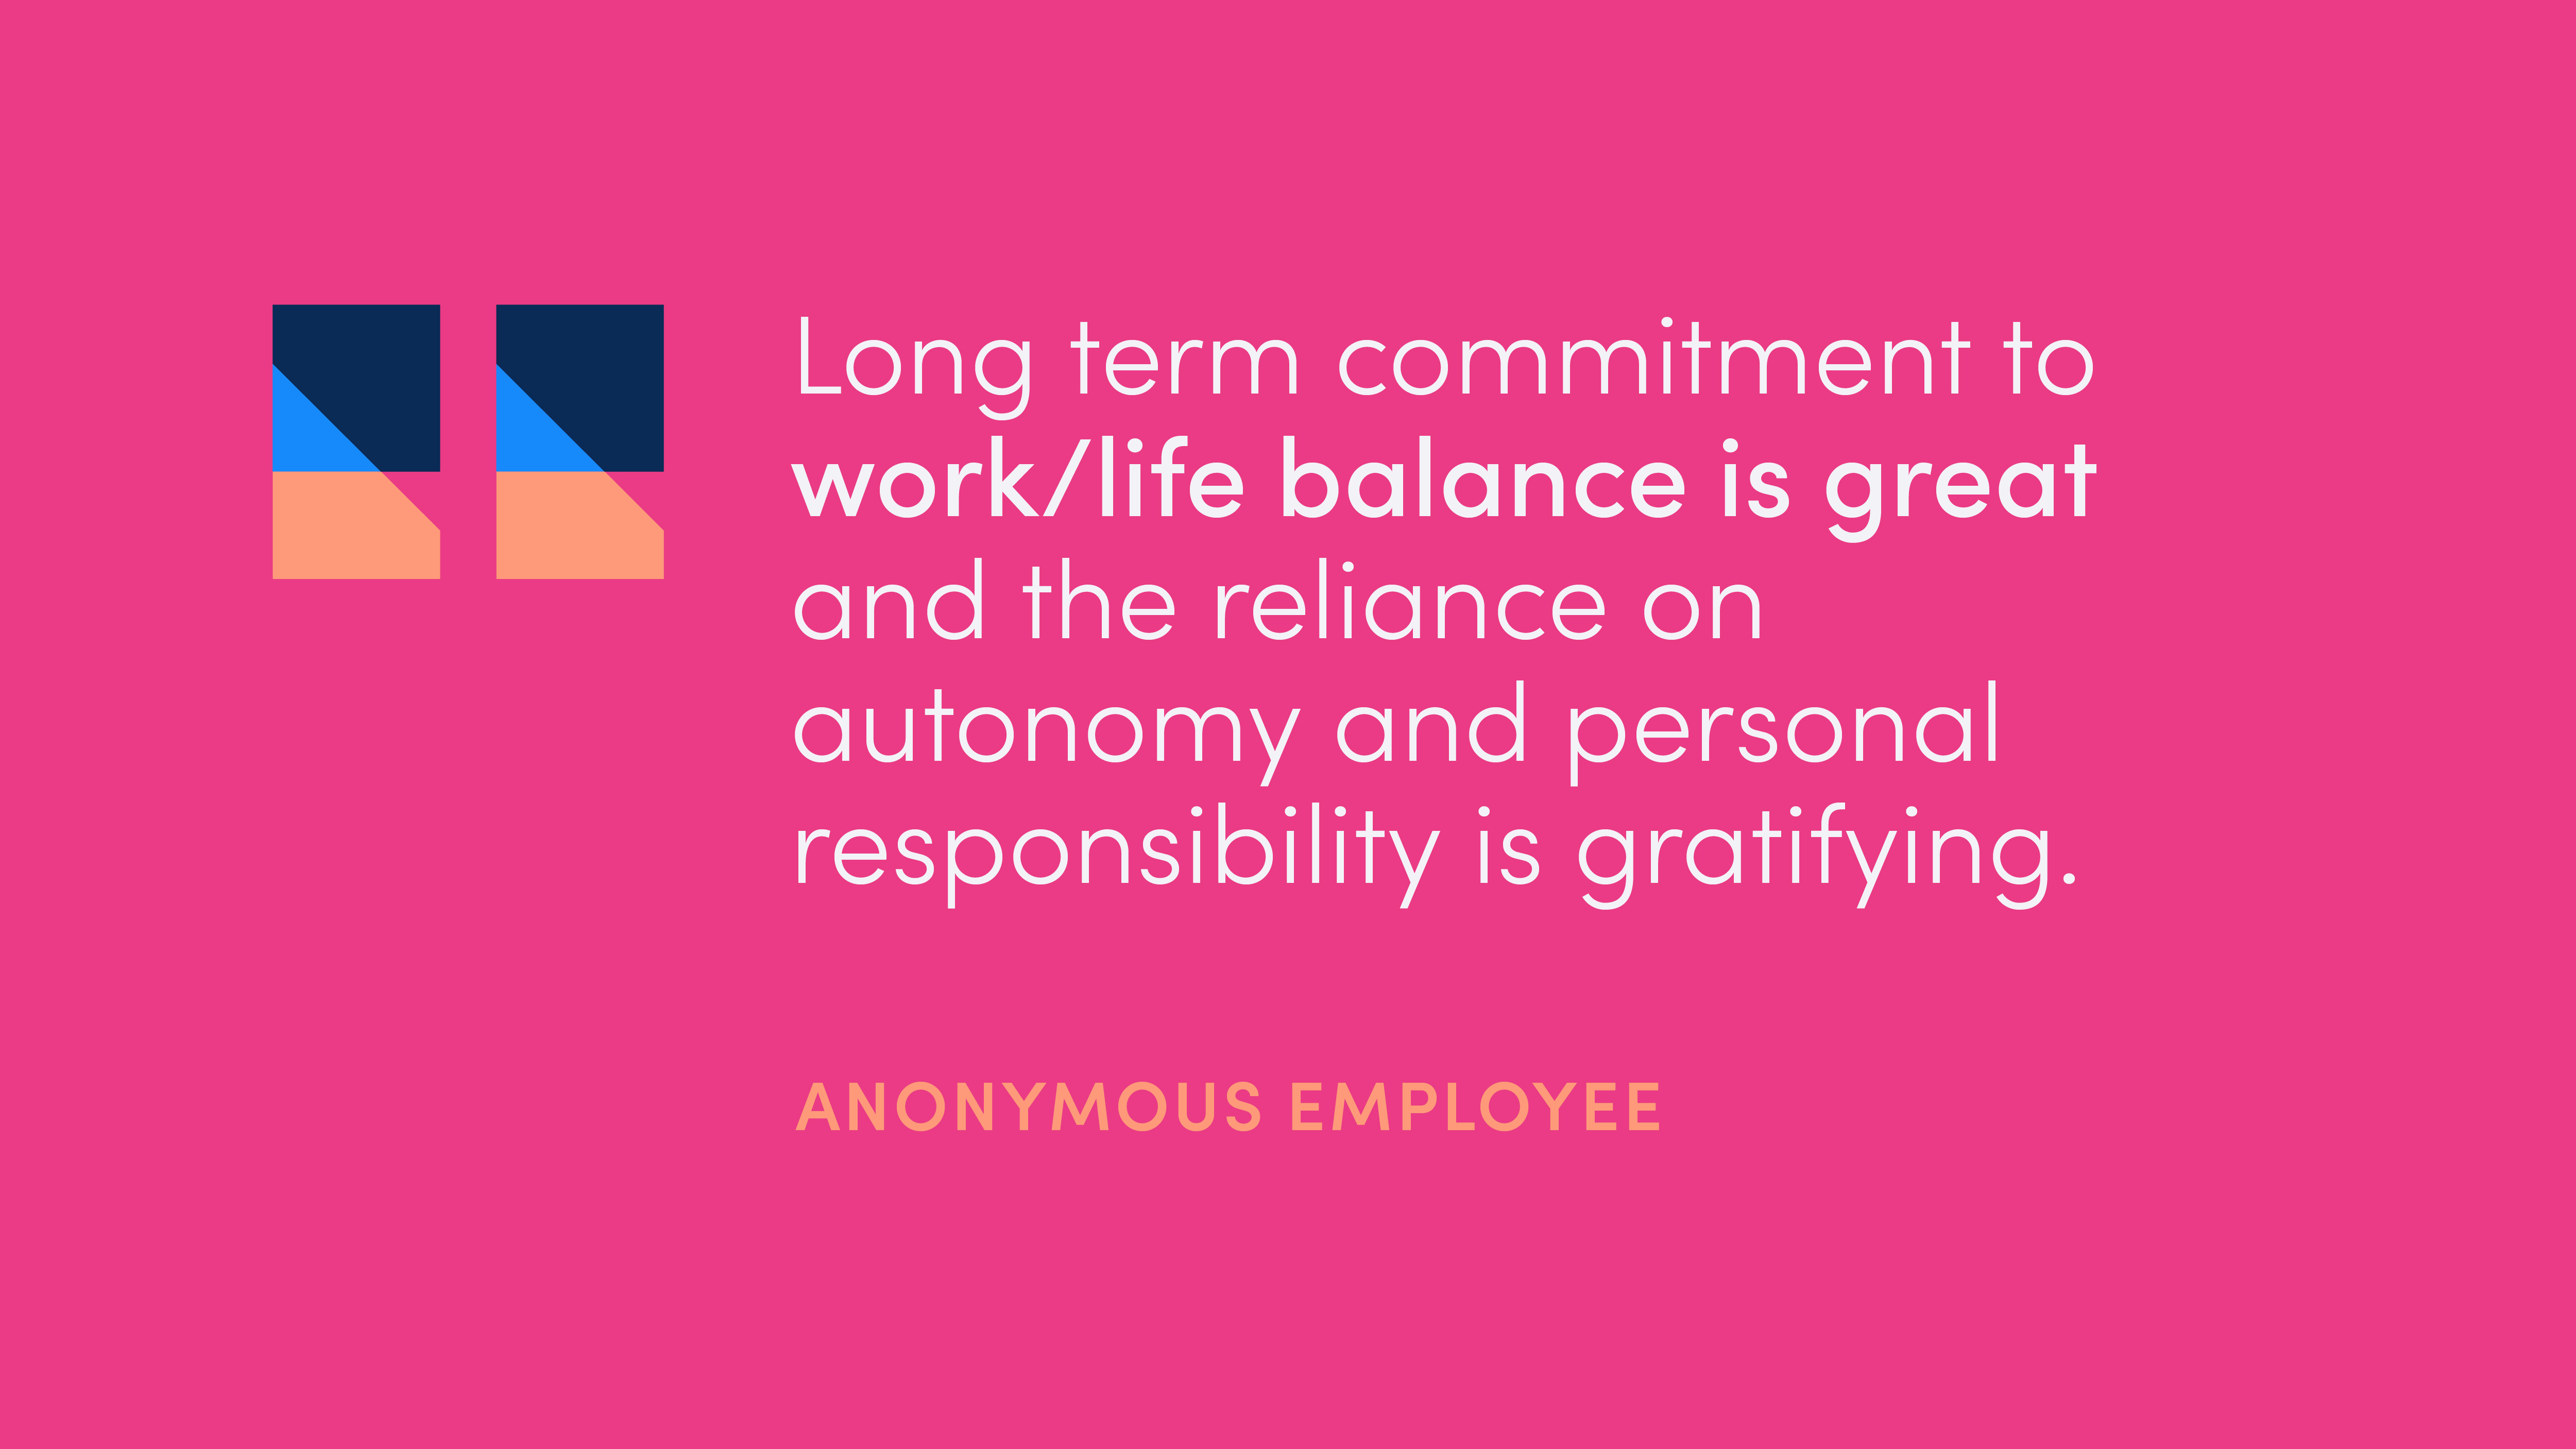 Anonymous employee quote: 